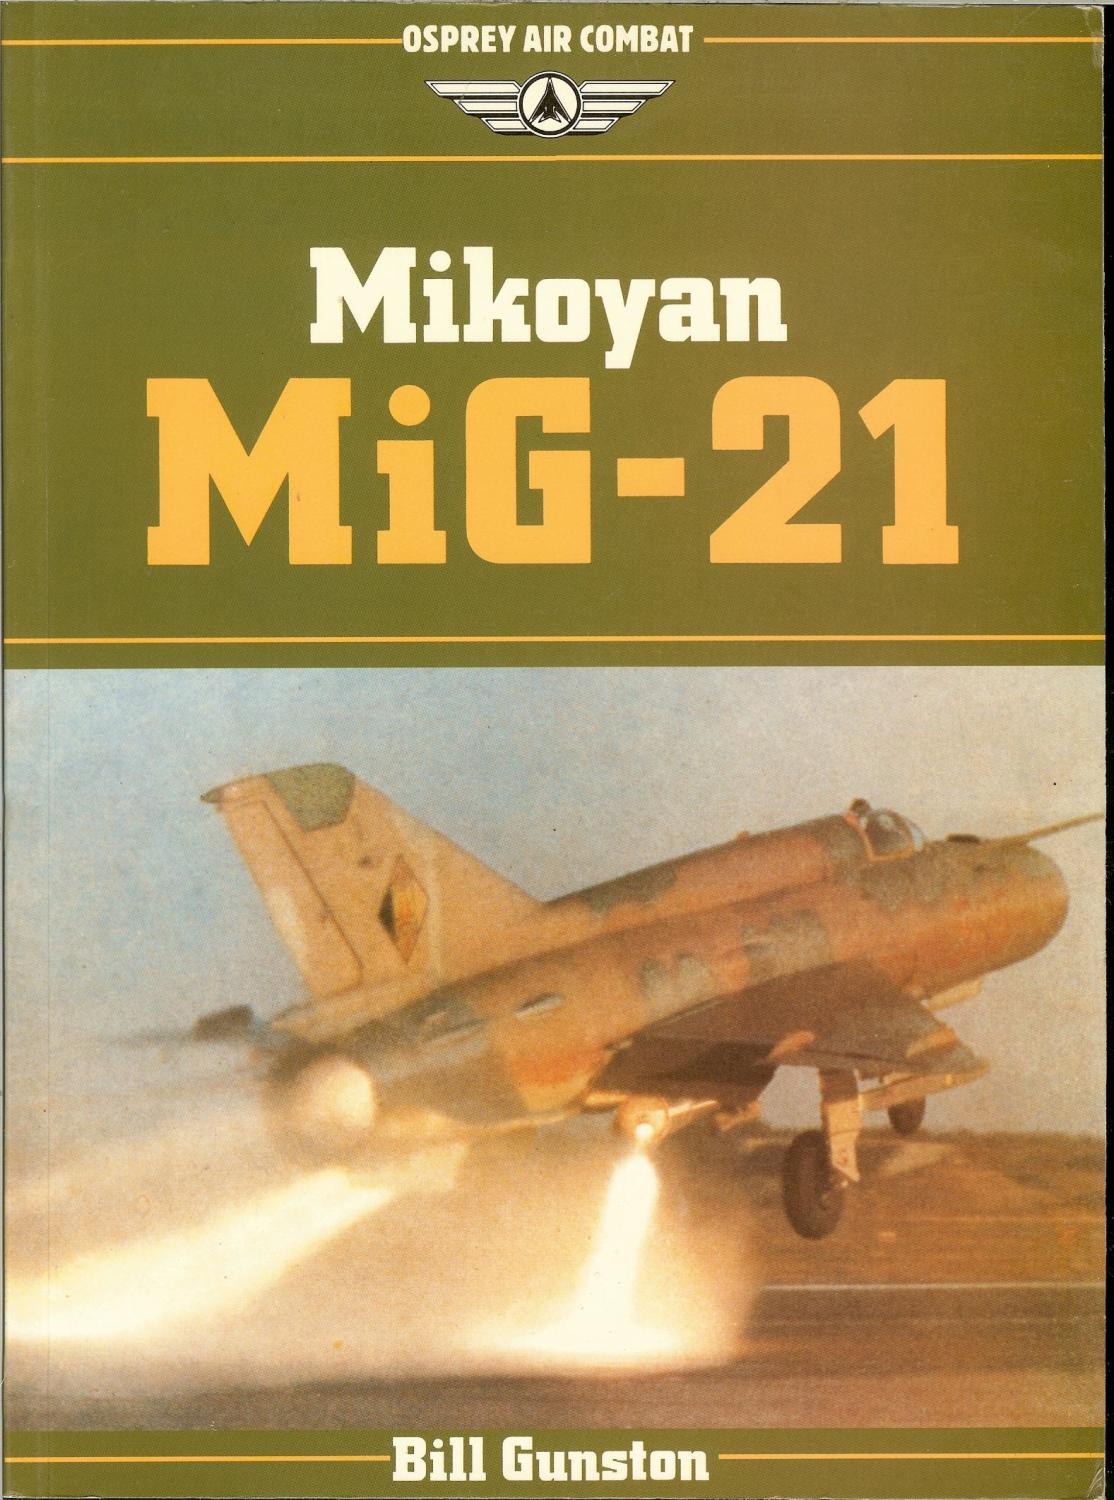 Mikoyan Mig-21 (Osprey air combat)